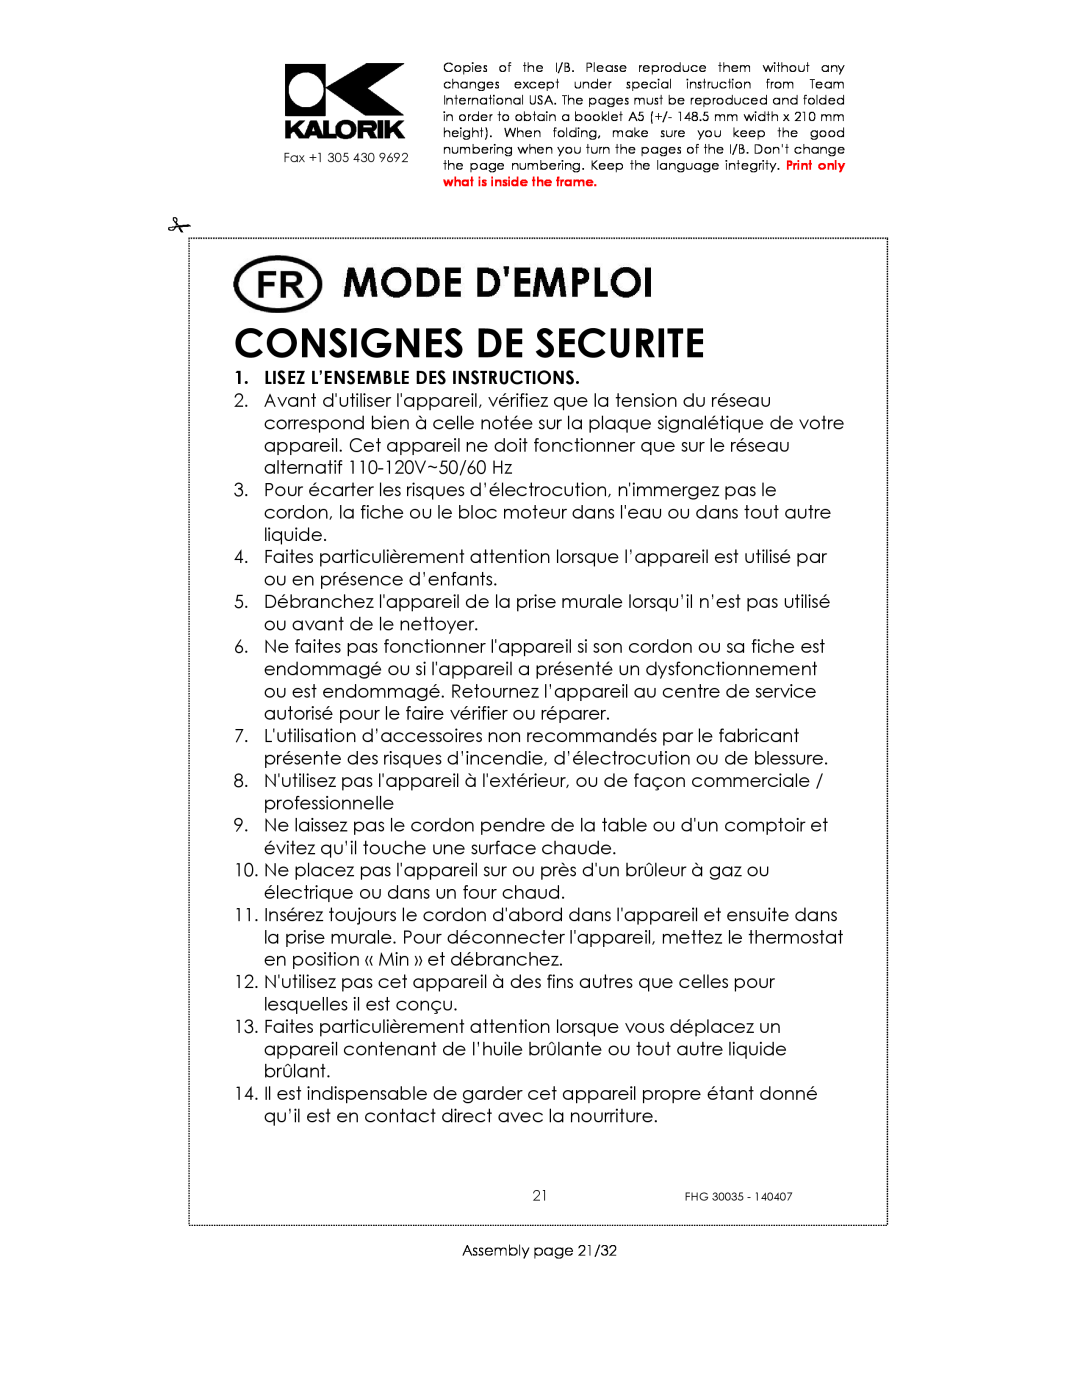 Kalorik FHG 30035 manual Consignes De Securite, Lisez L’Ensemble Des Instructions 